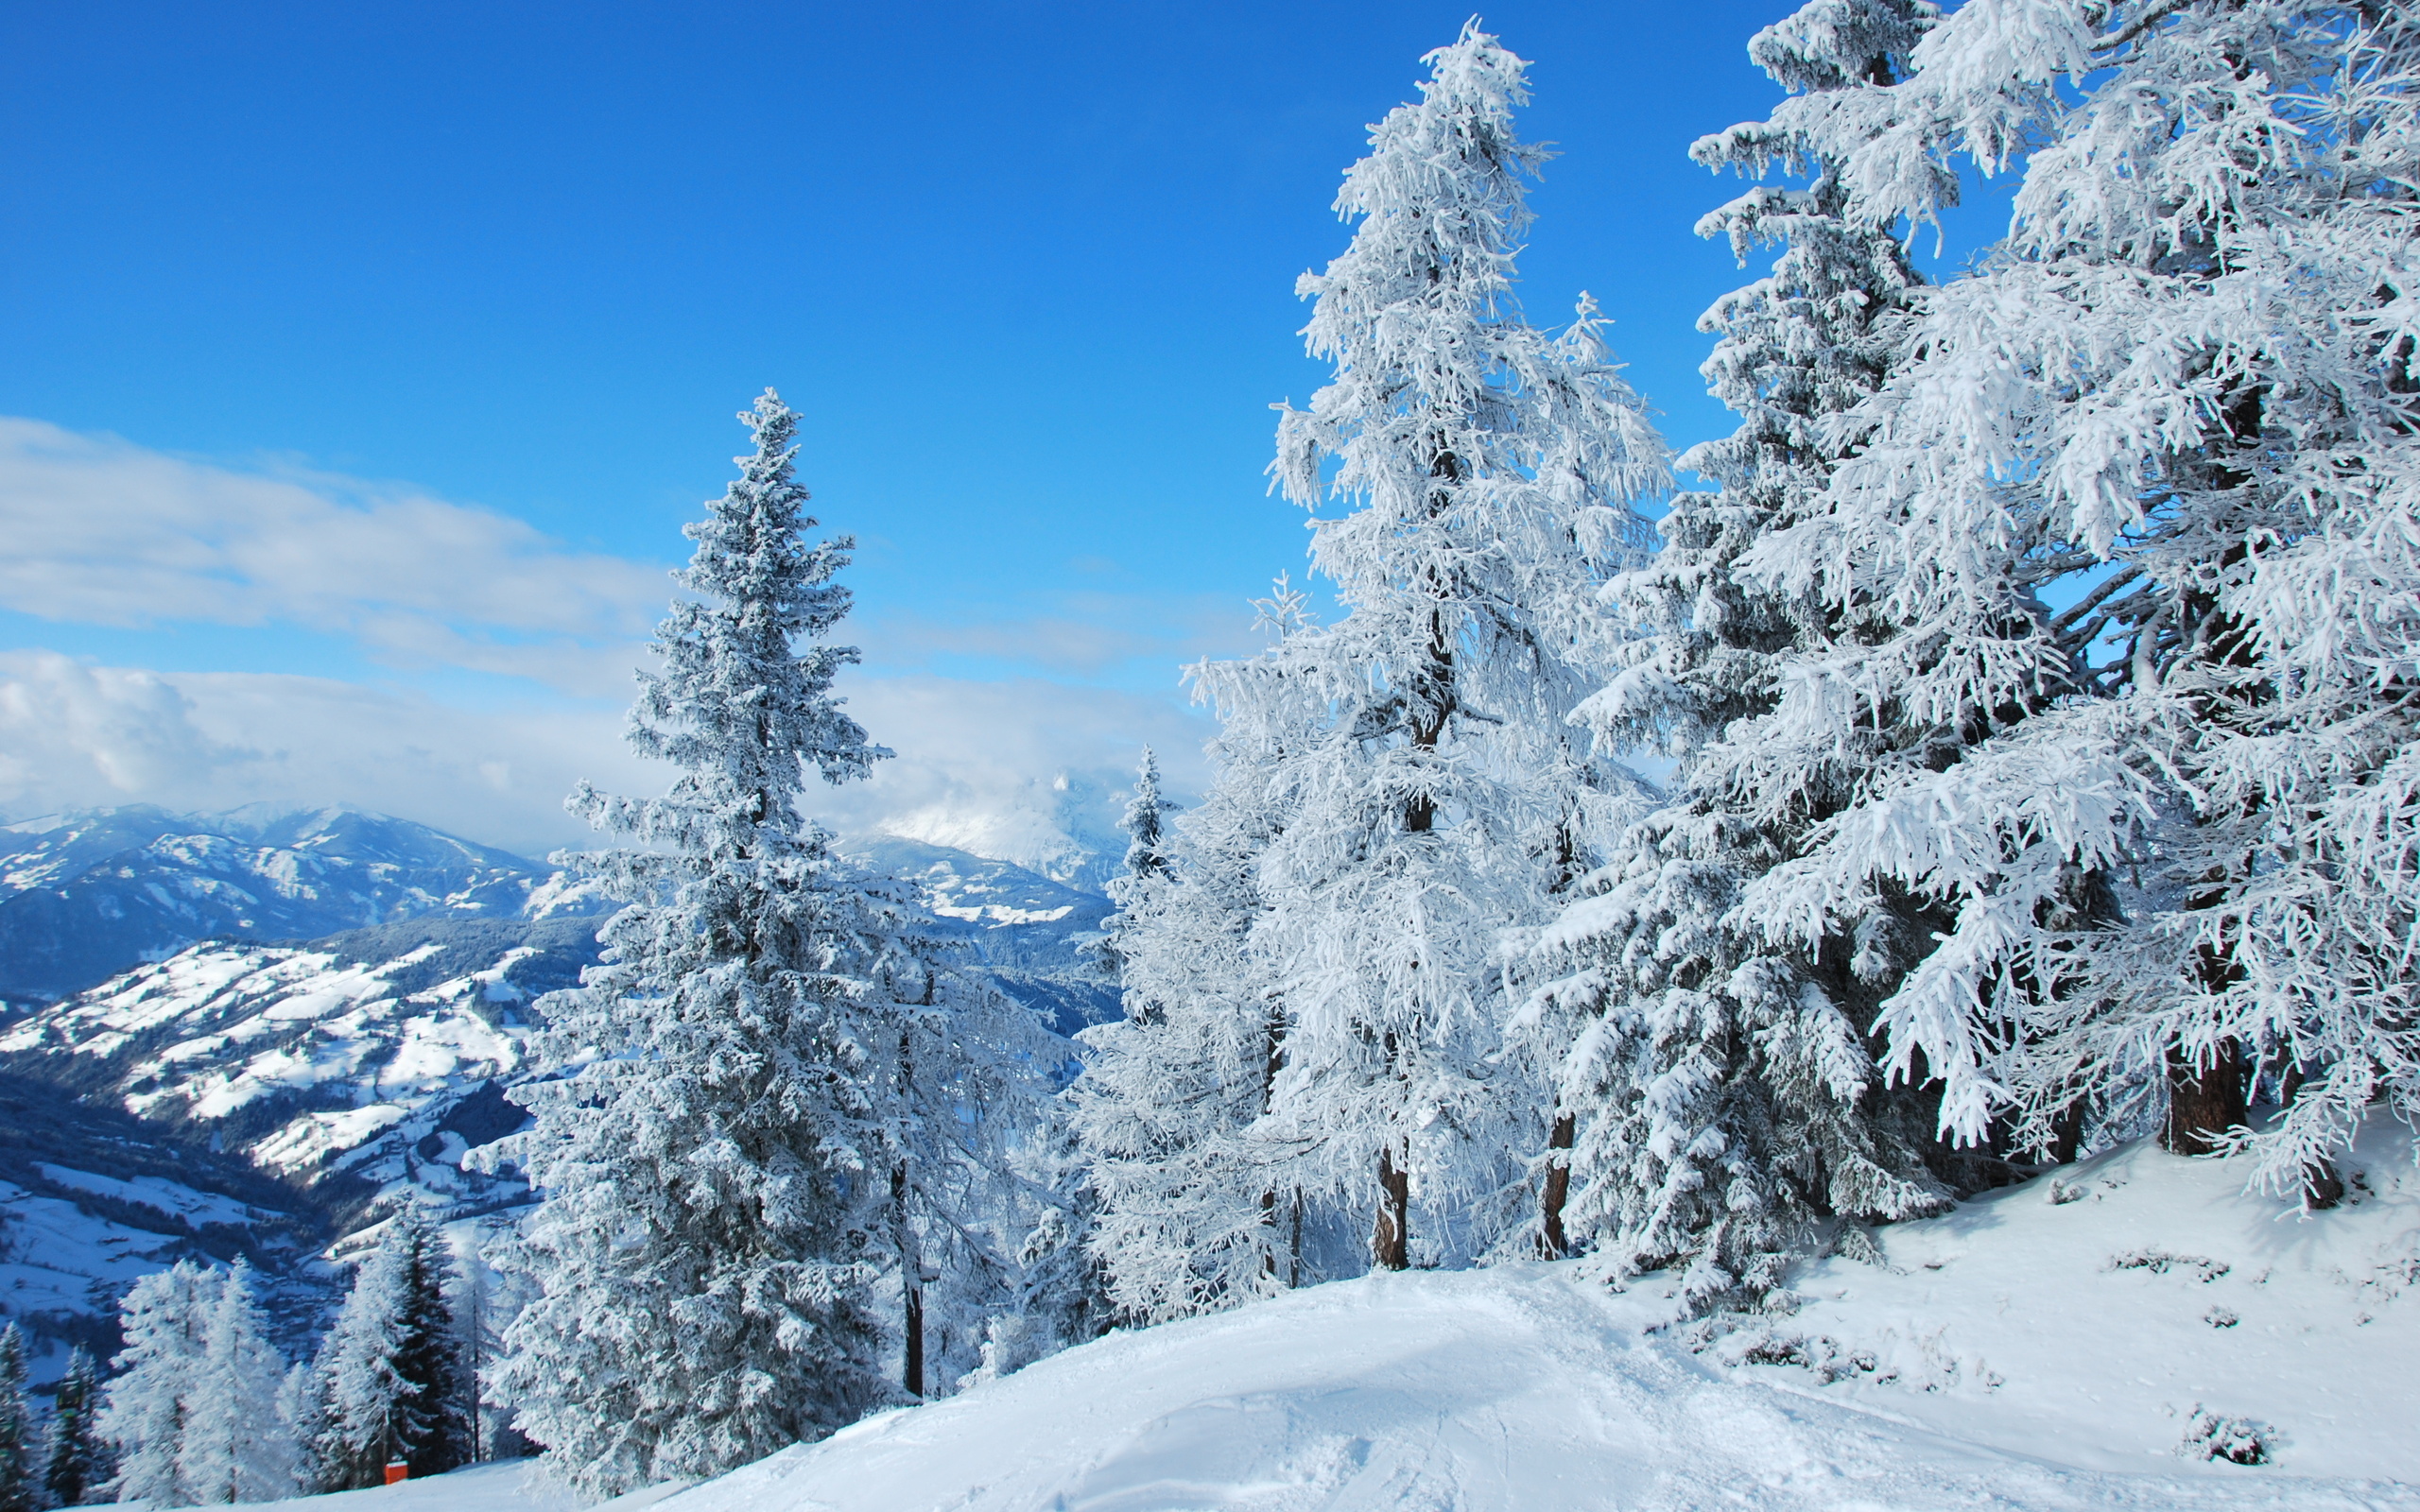 Скачать картинку Зима, Снег, Дерево, Ландшафт, Земля/природа в телефон бесплатно.